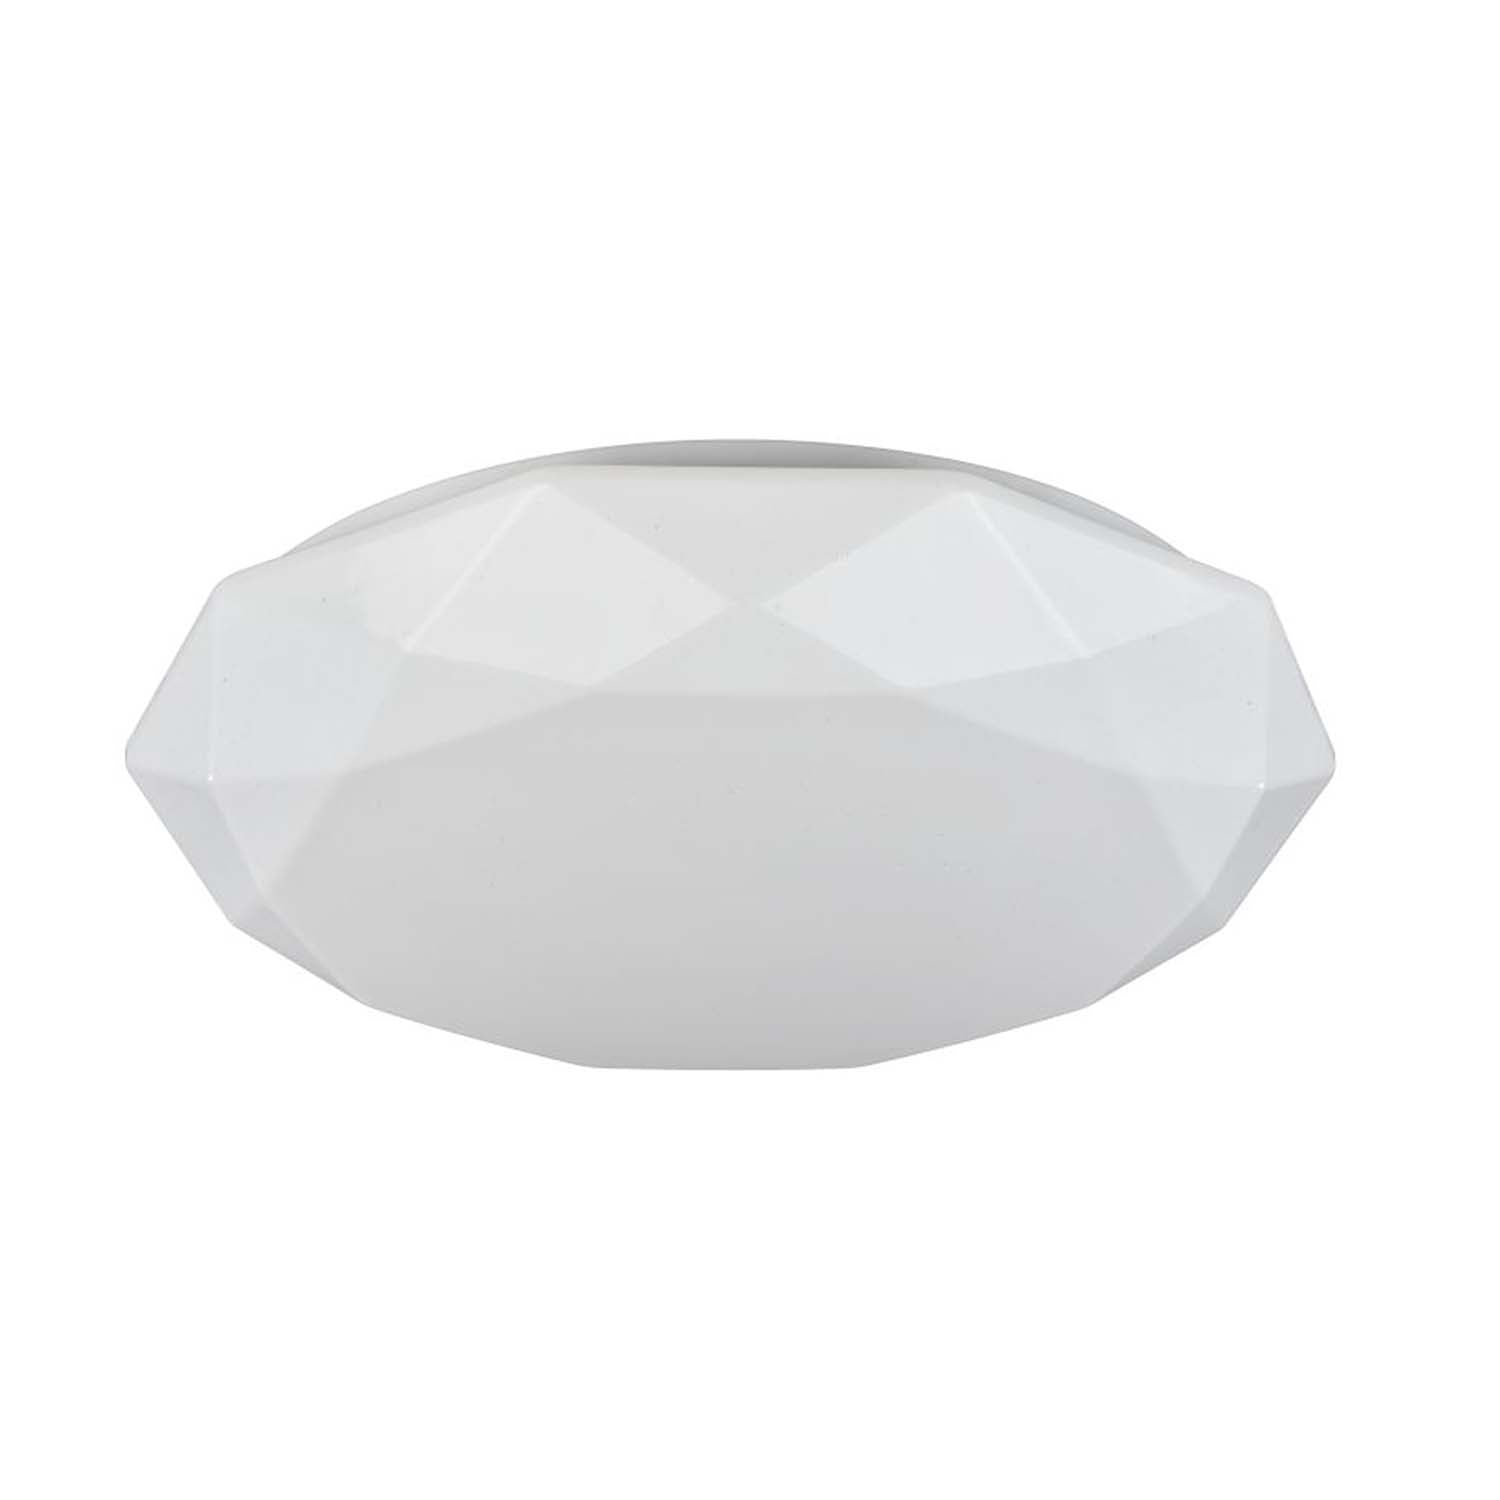 CRYSTALLIZE - Plafonnier géométrique blanc en acrylique design